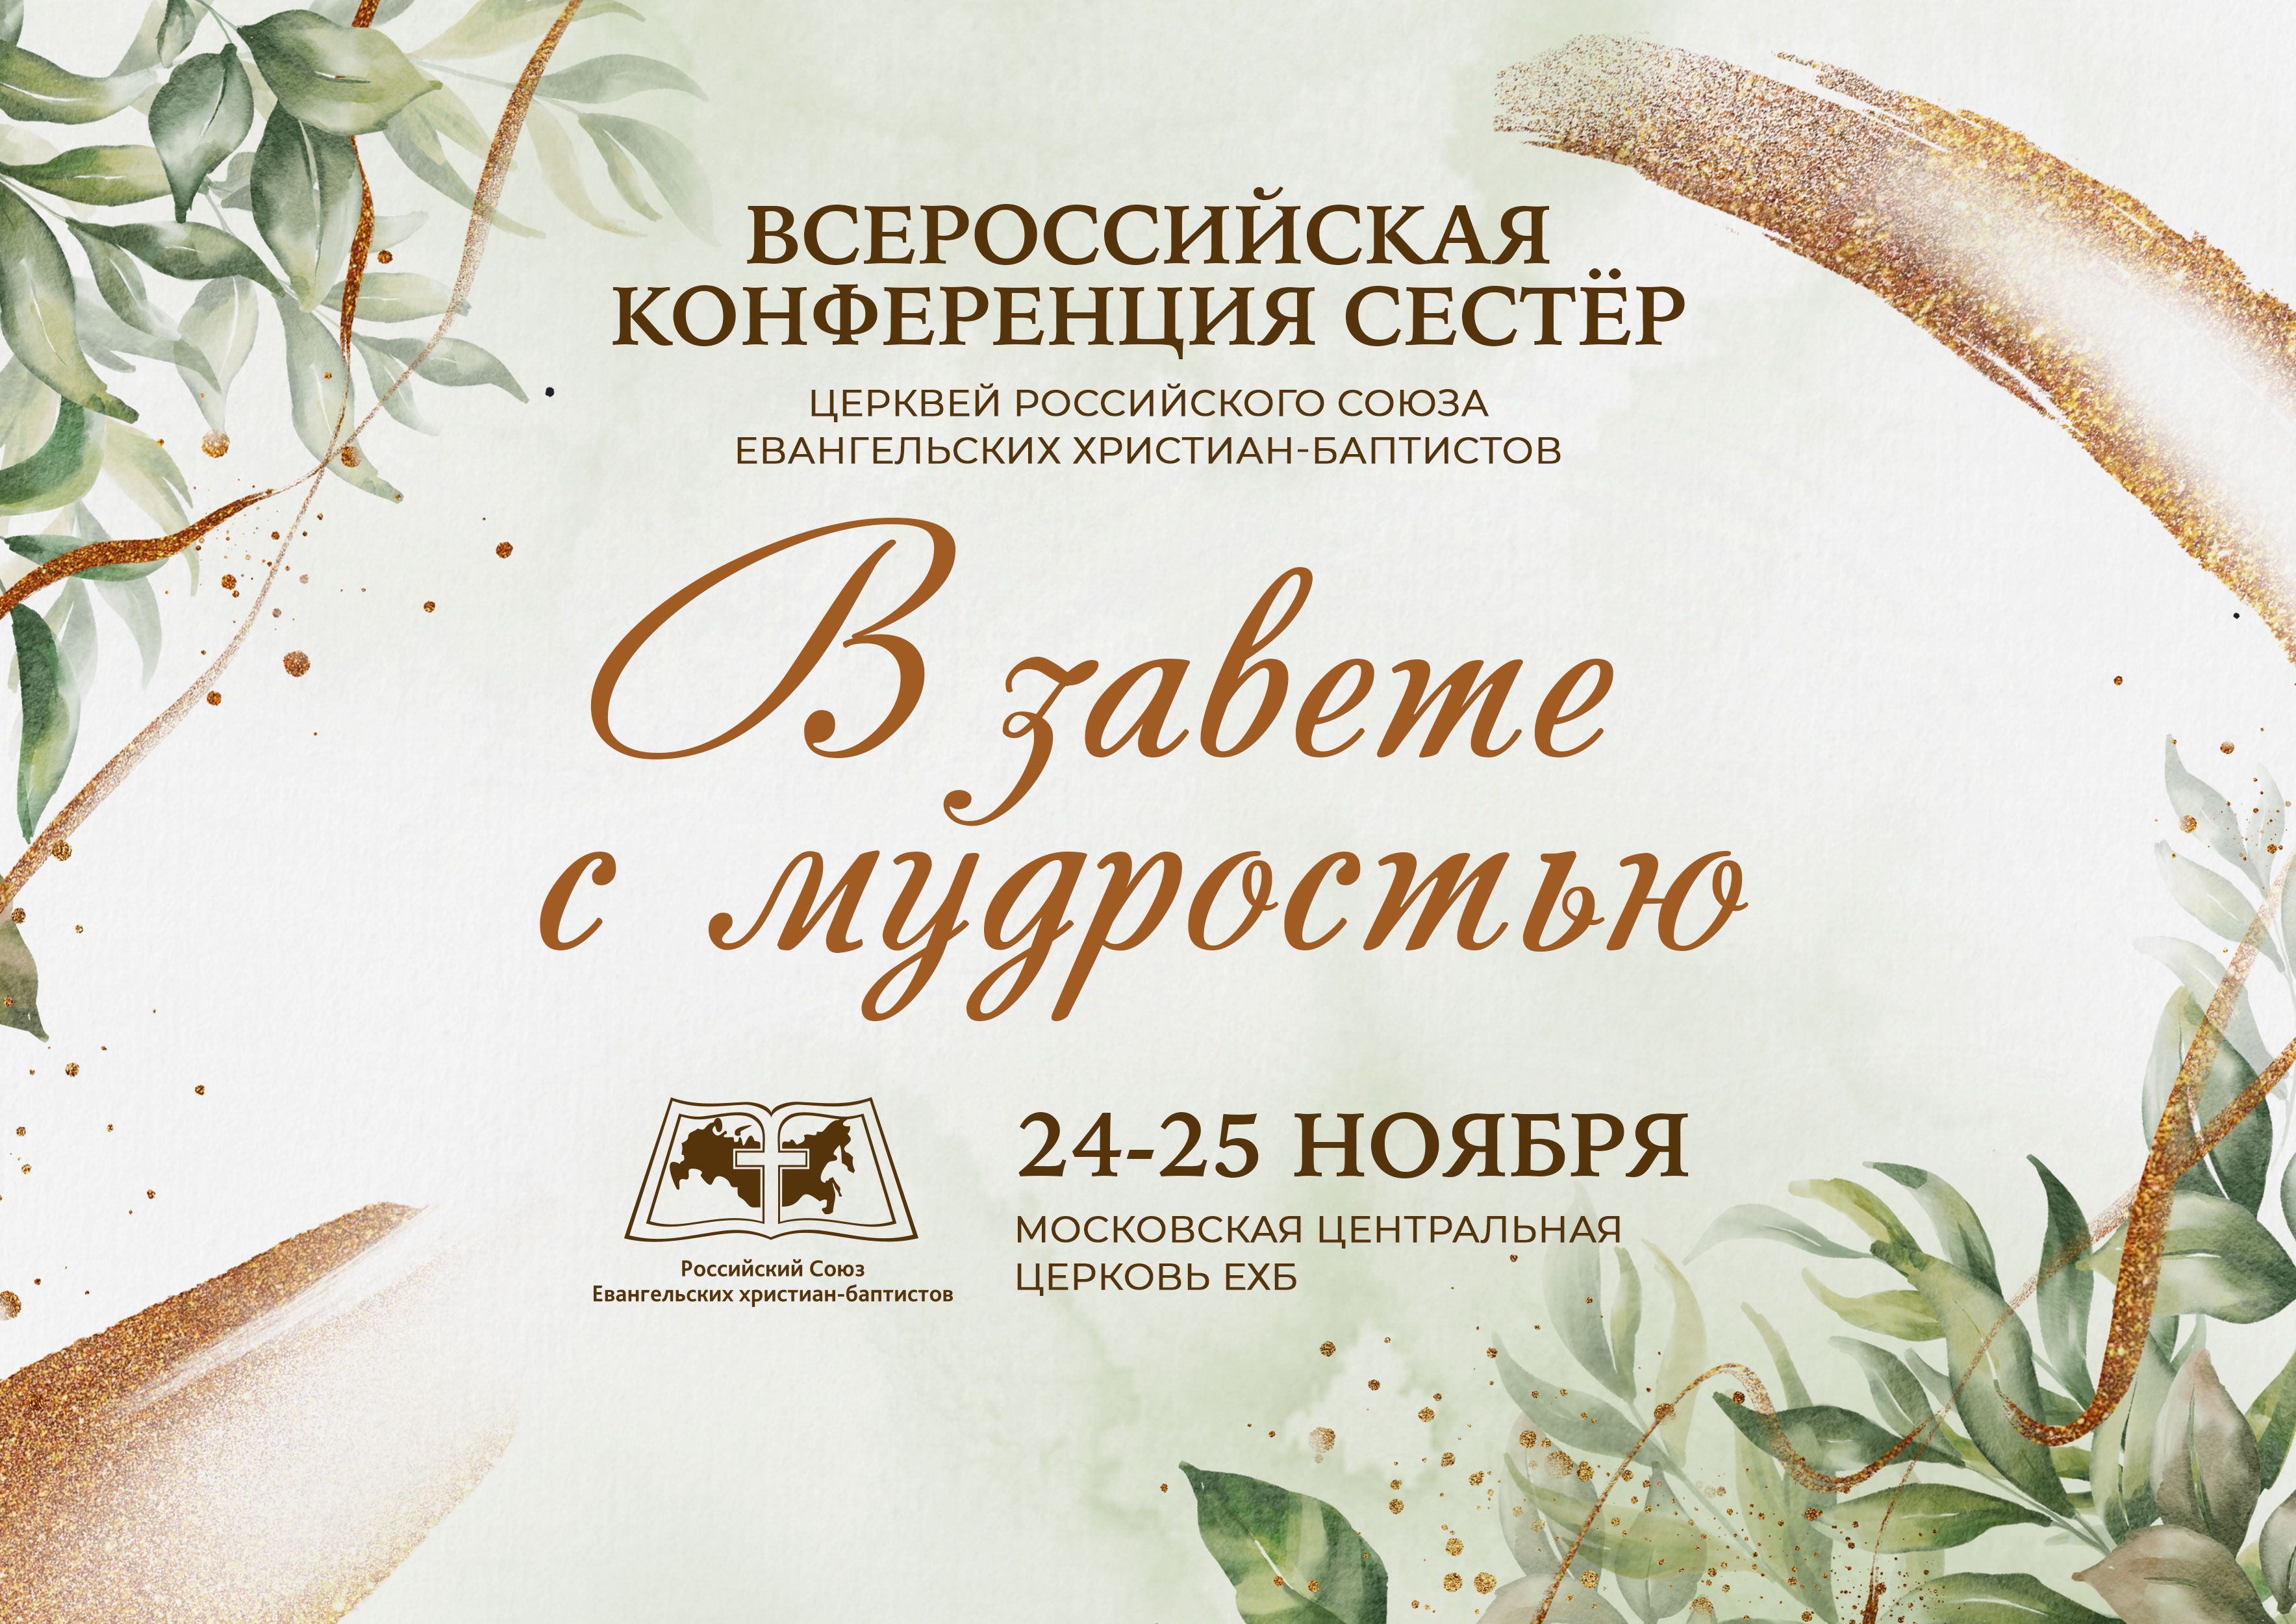 В завете с мудростью" - Всероссийская конференция сестер церквей РС ЕХБ